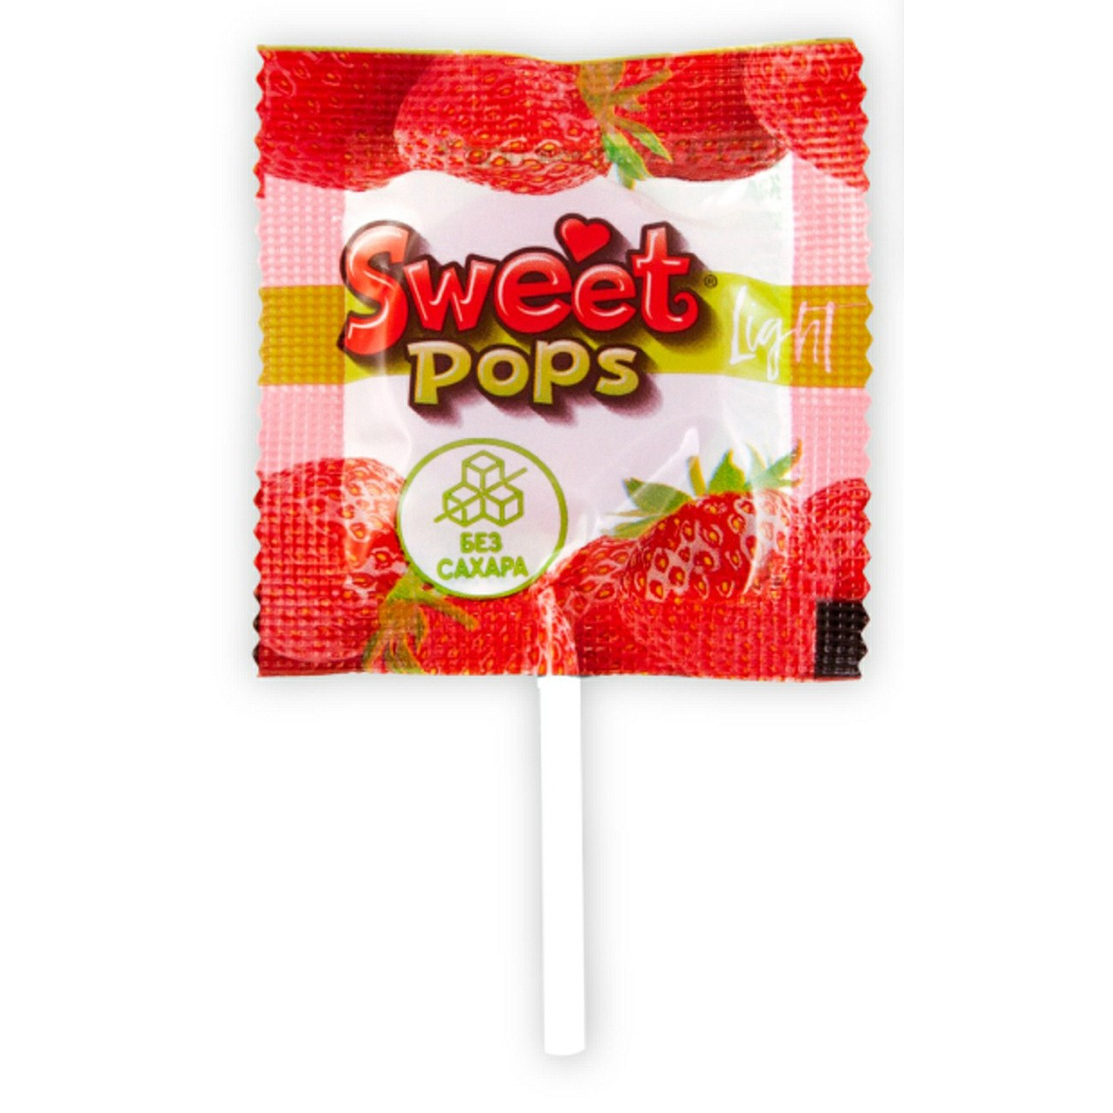 Карамель Sweet pops light без сахара 10 г в ассортименте губная помада тон 030 карамель 4 3г